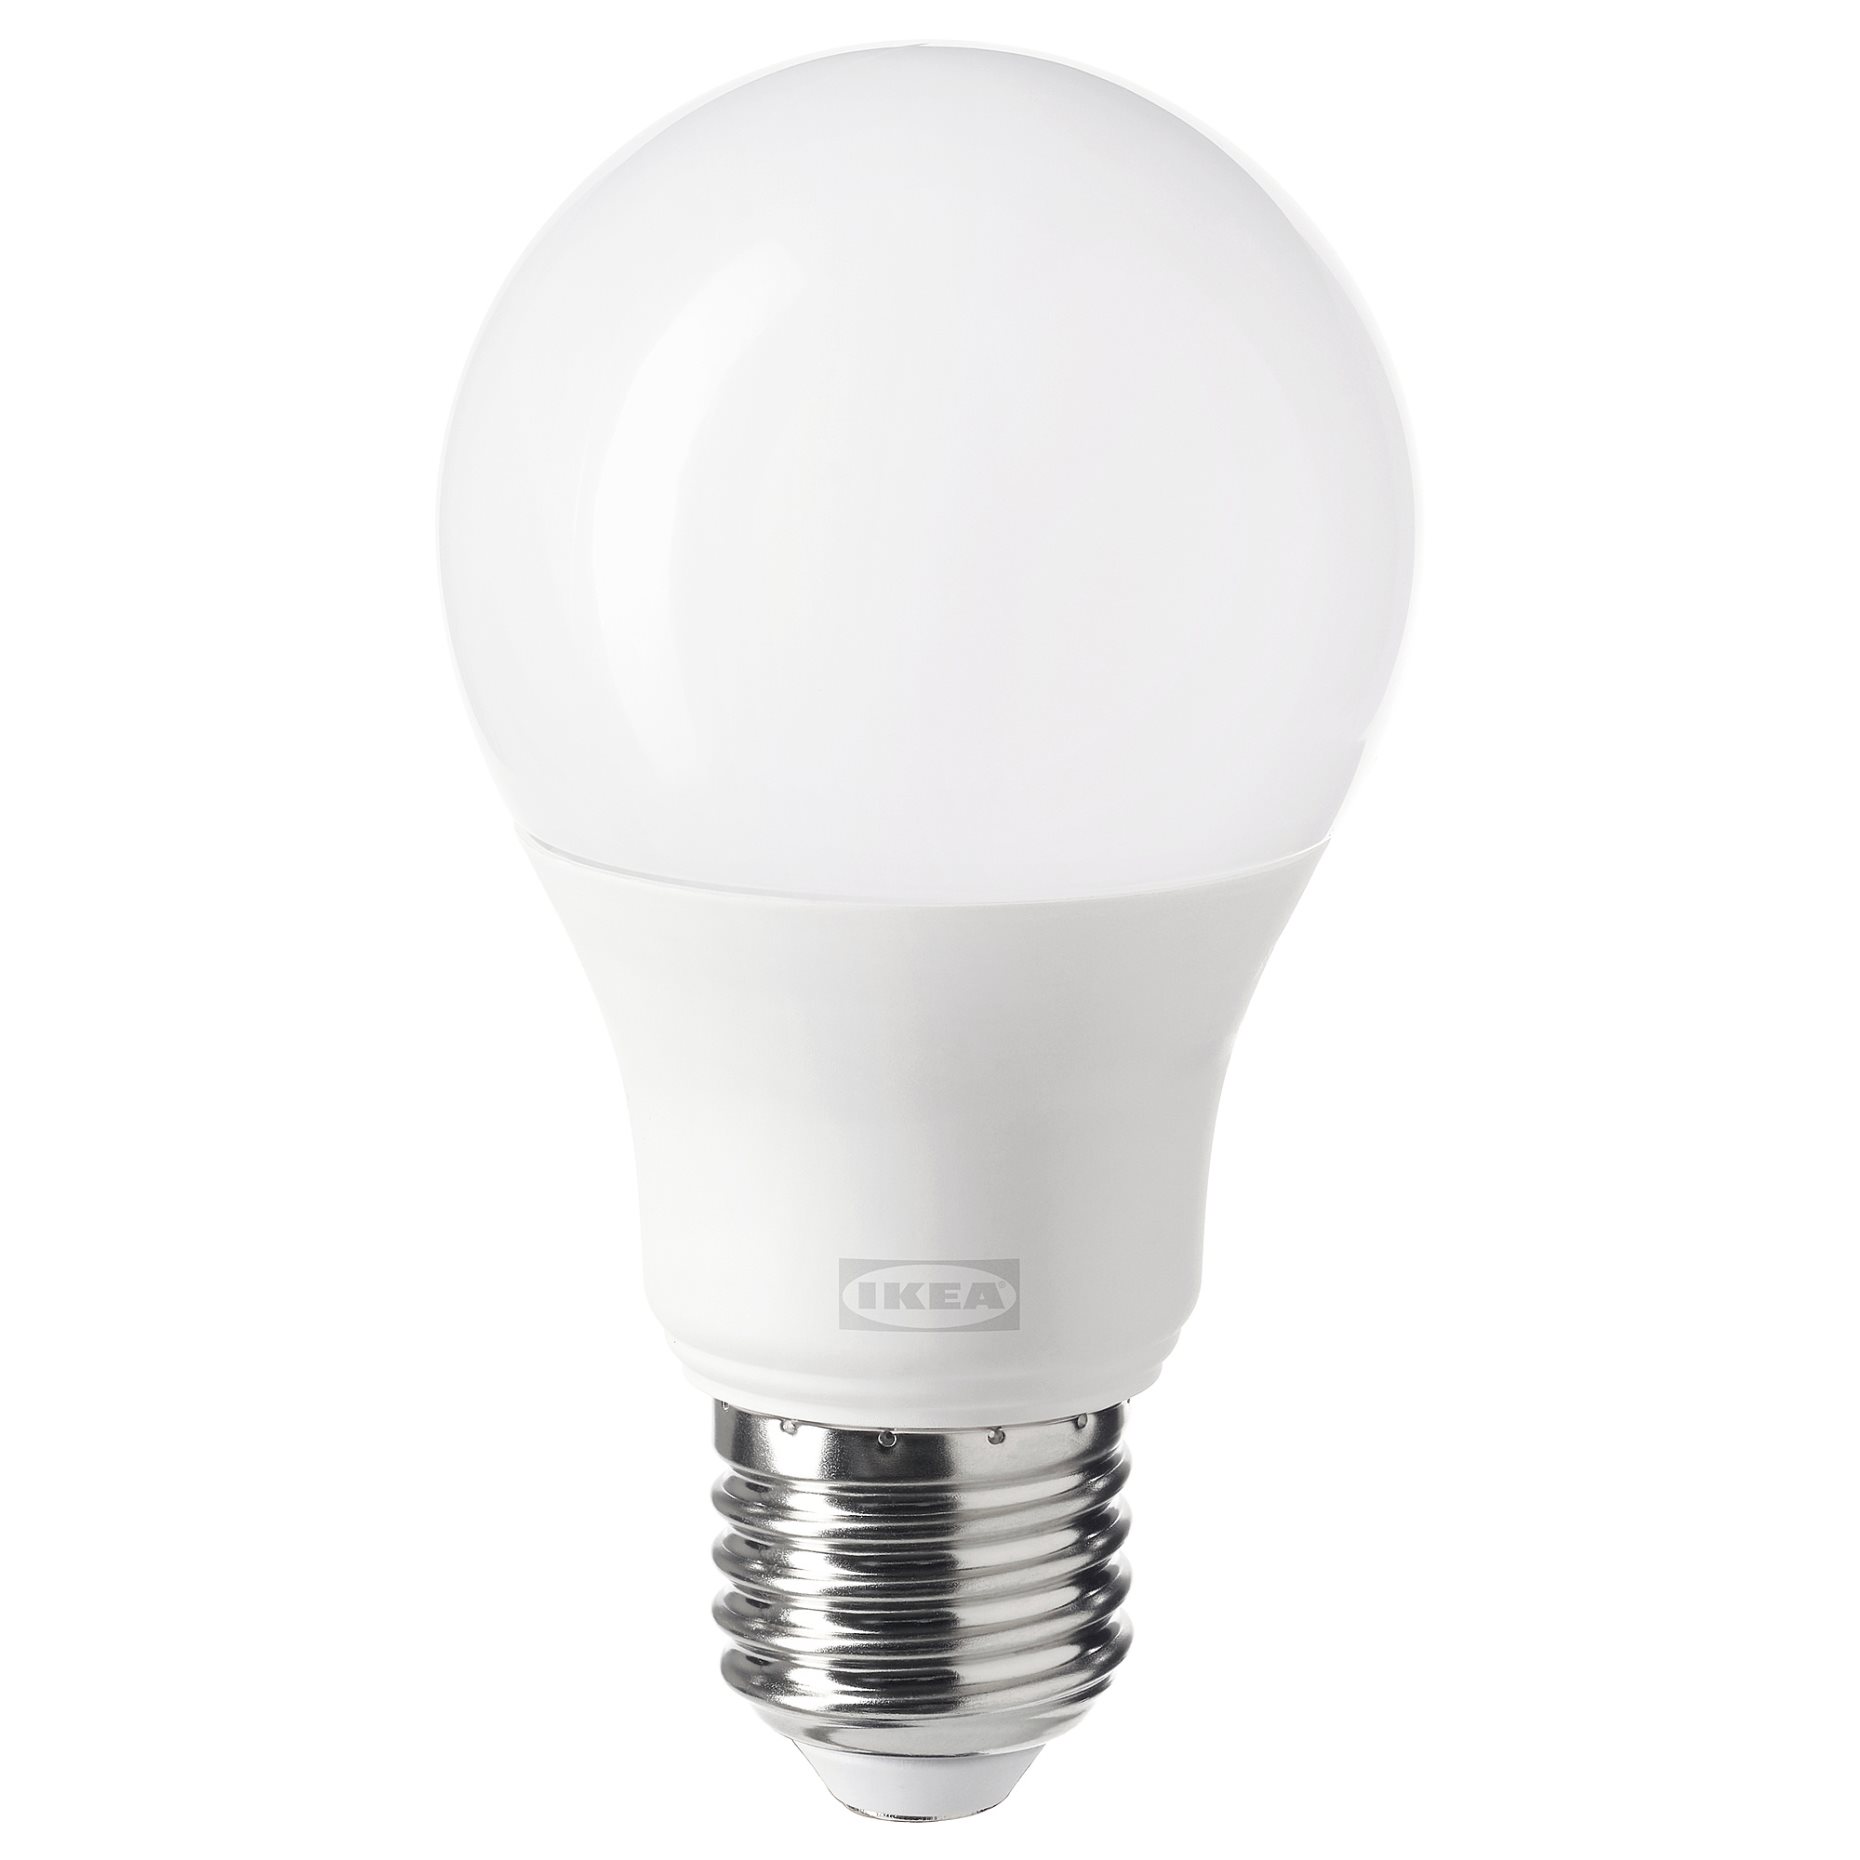 TRÅDFRI, LED крушка E27 806 лумена, смарт безжично регул. на светл./топло бяло, 605.414.96